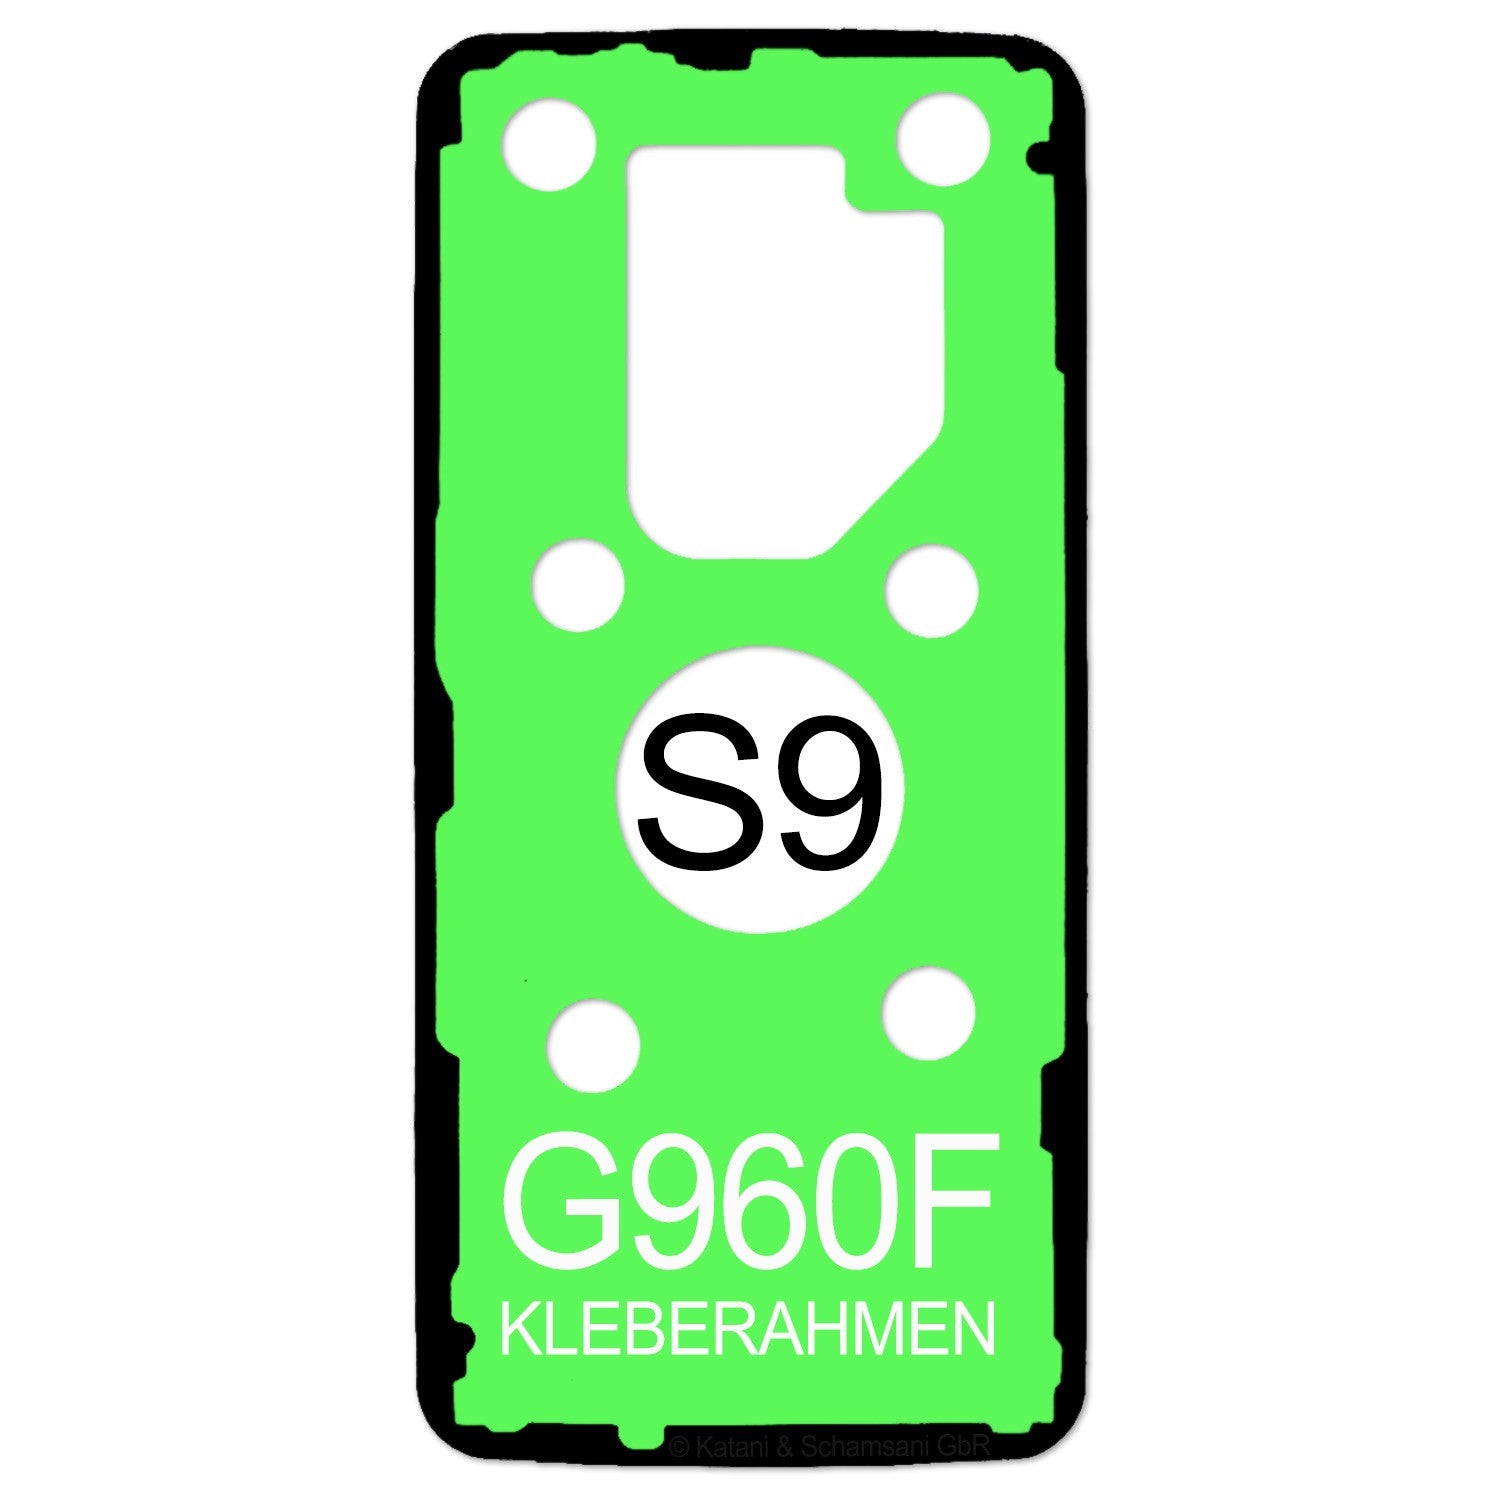 Samsung Galaxy S9 - G960F Kleberahmen